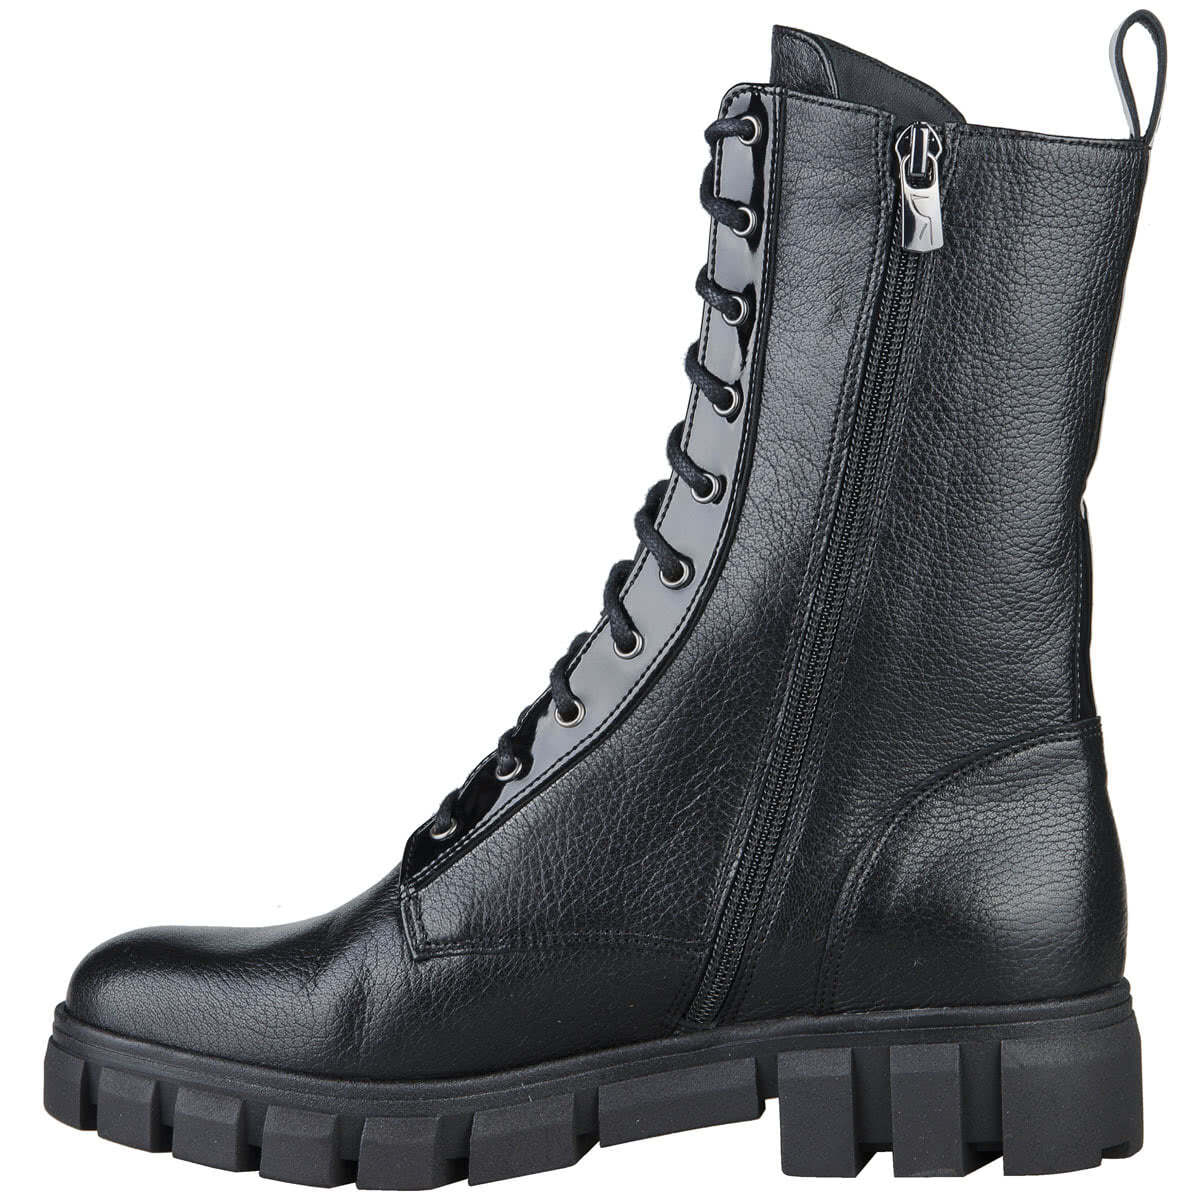 Черные женские высоки ботинки на шнуровке утепленные байкой на каблуке 4 смкупить в интернет магазине Kwinto